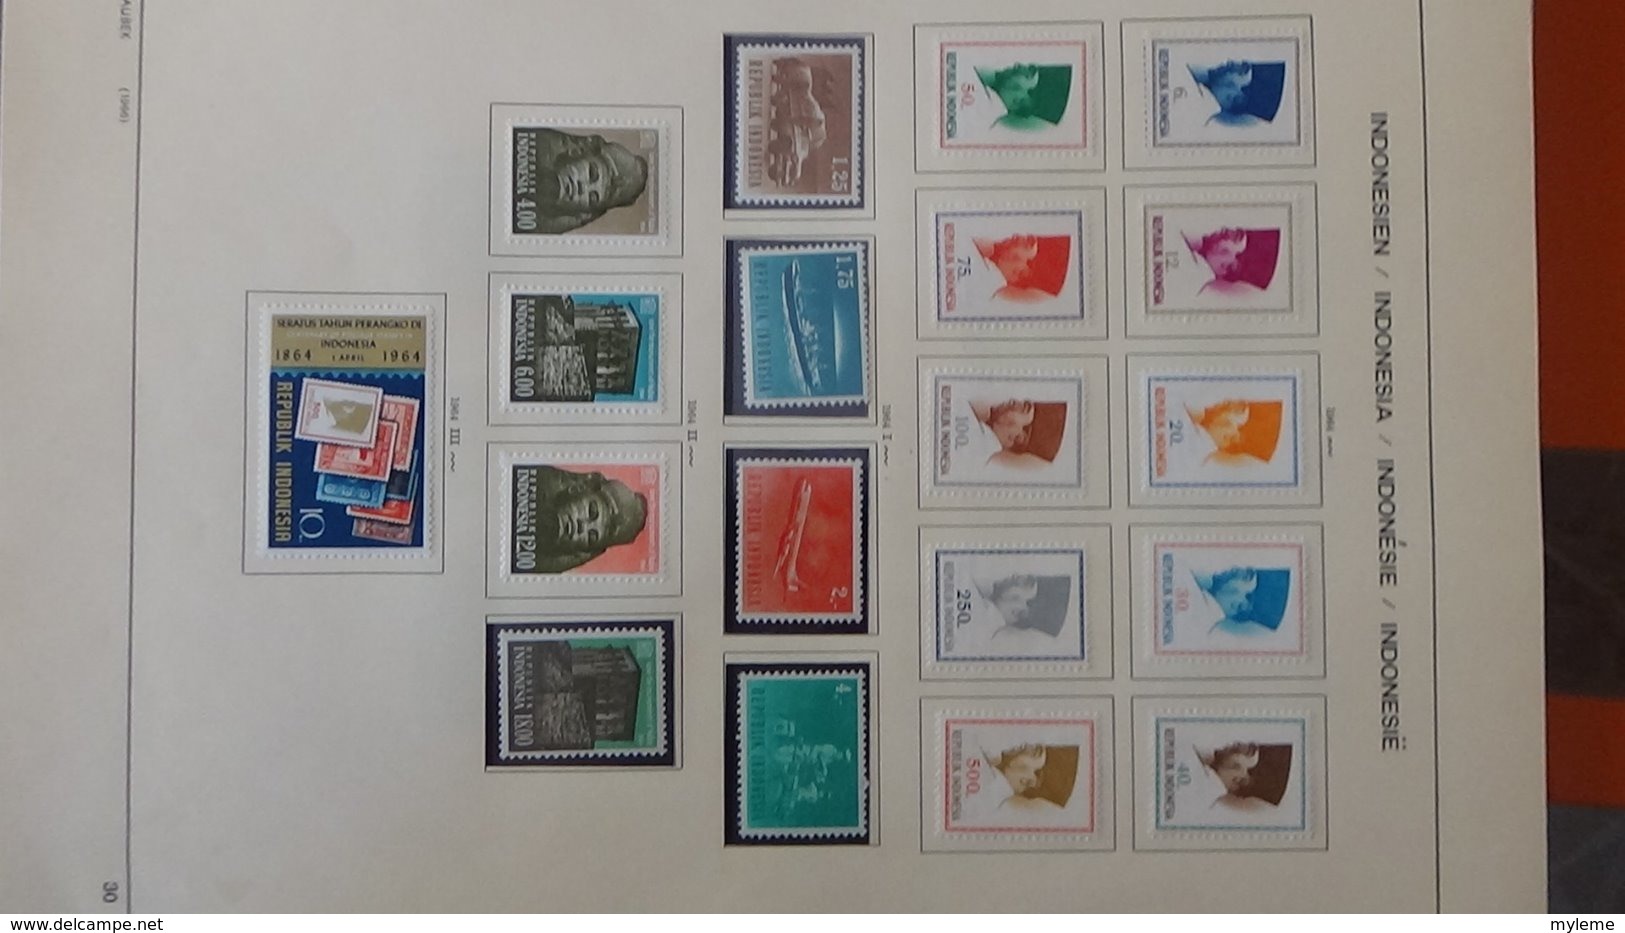 Collection timbres d'INDONESIE Idéal pour thématiques A saisir !!!